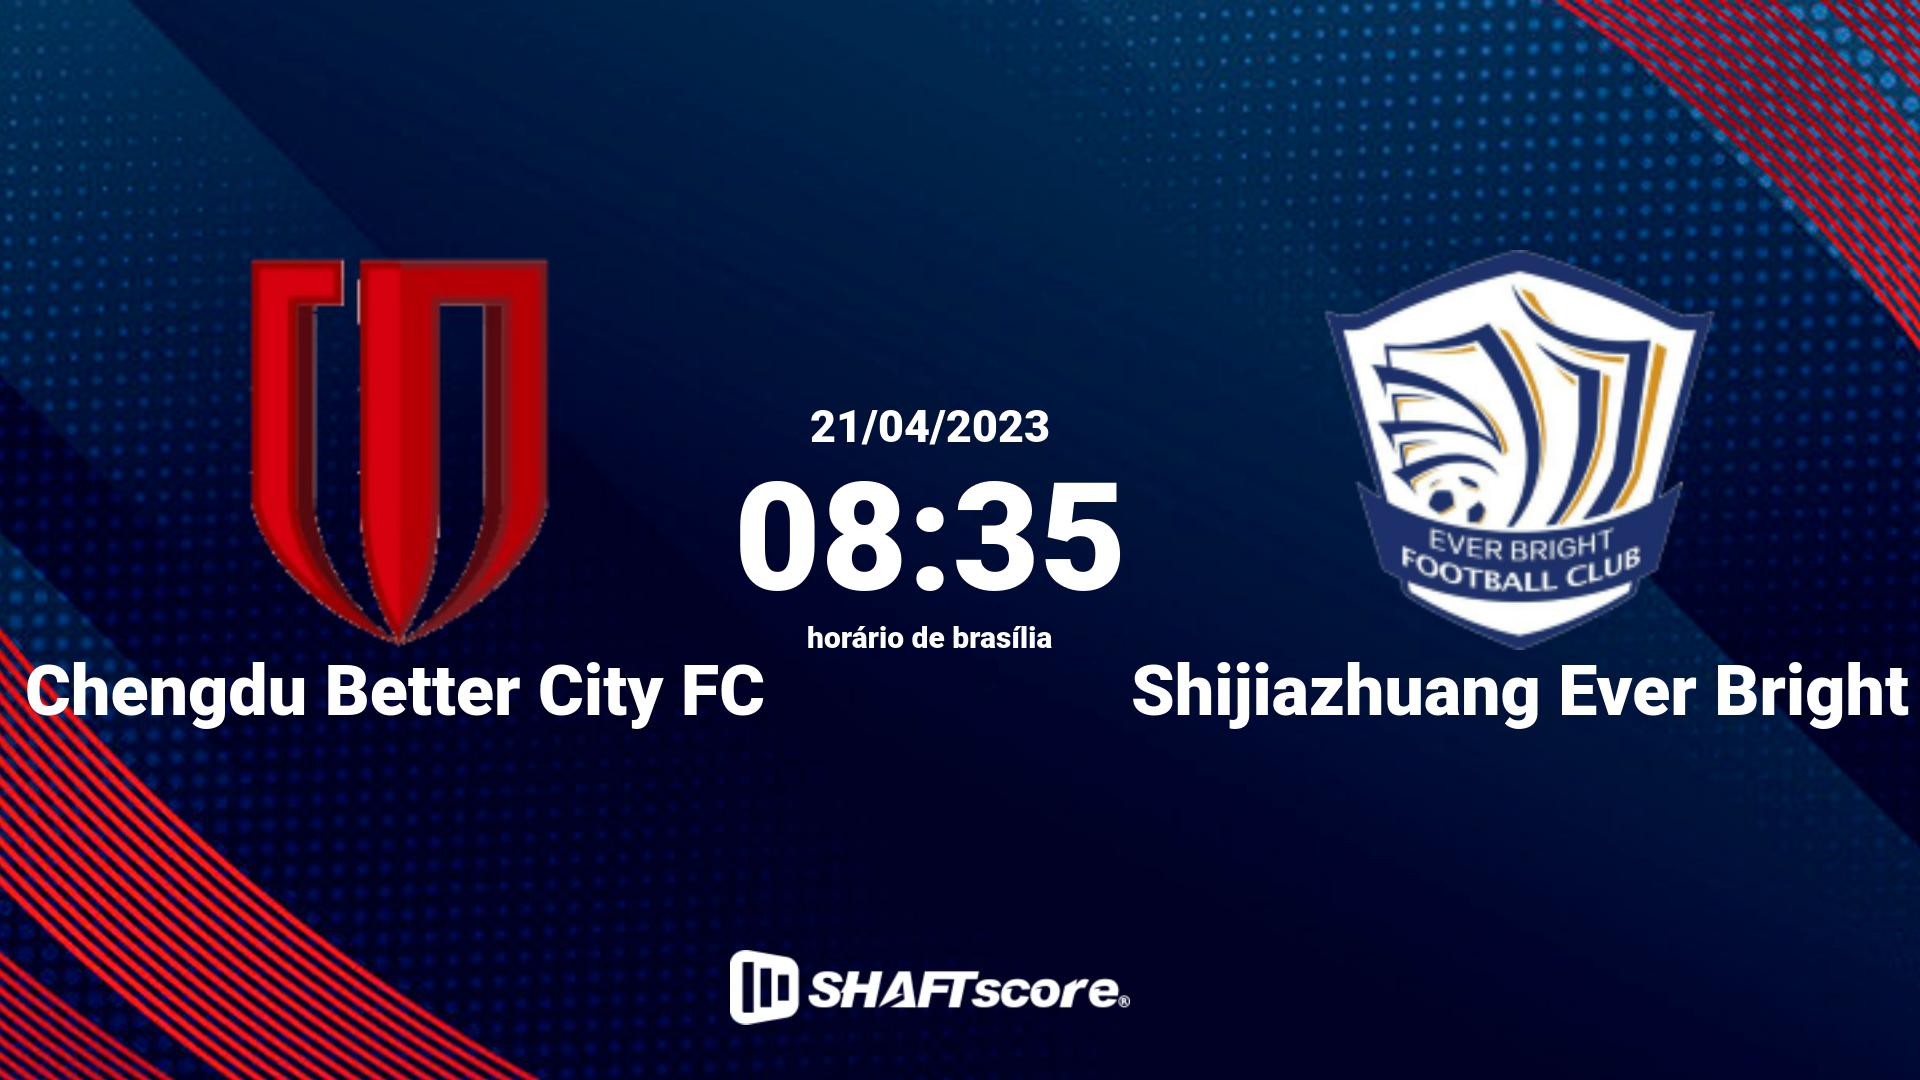 Estatísticas do jogo Chengdu Better City FC vs Shijiazhuang Ever Bright 21.04 08:35